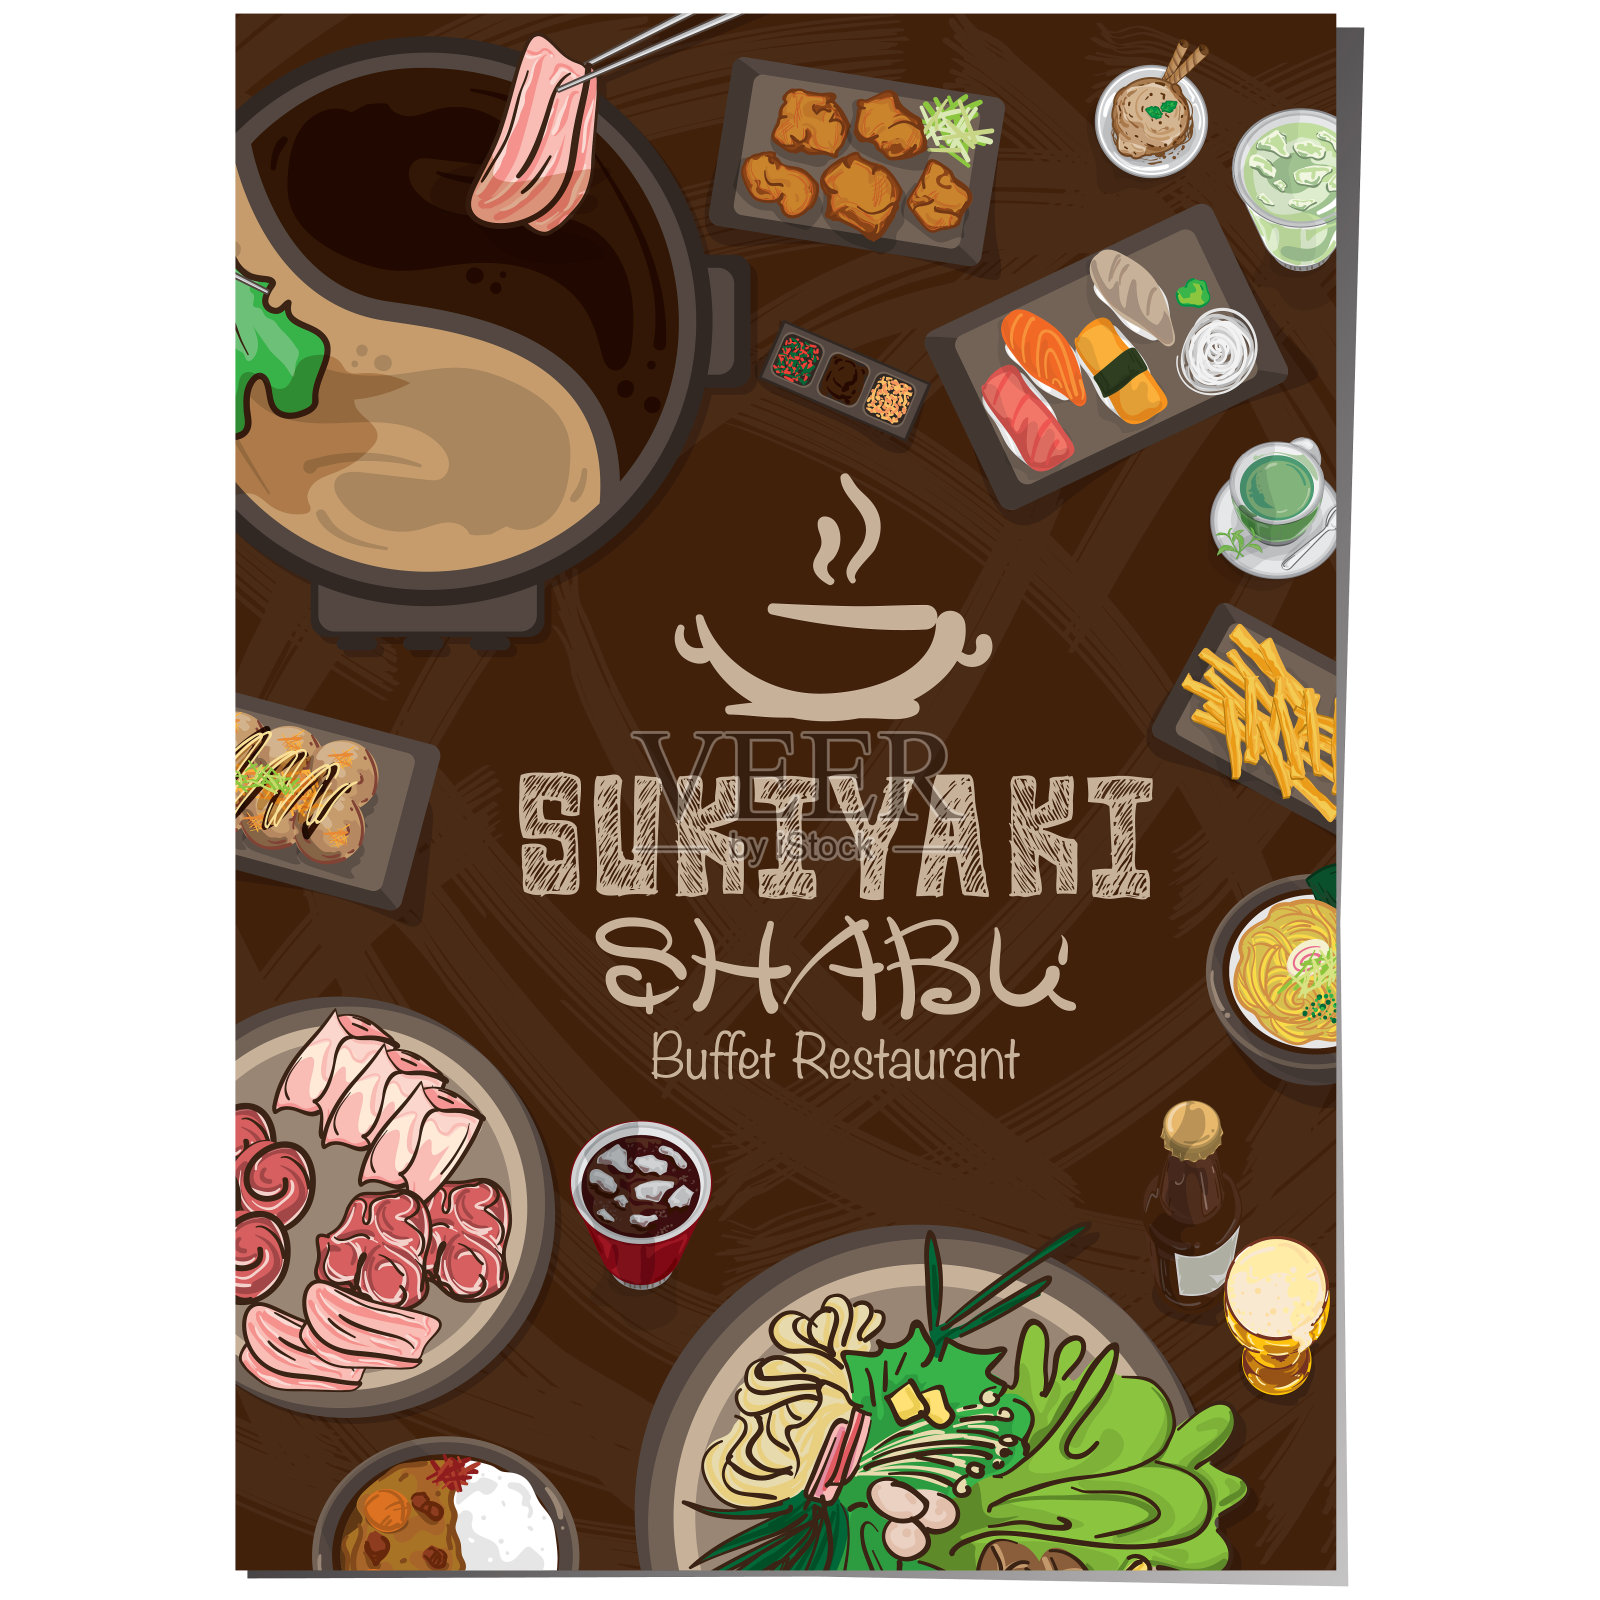 菜单日式素喜烧餐厅模板设计图形对象插画图片素材